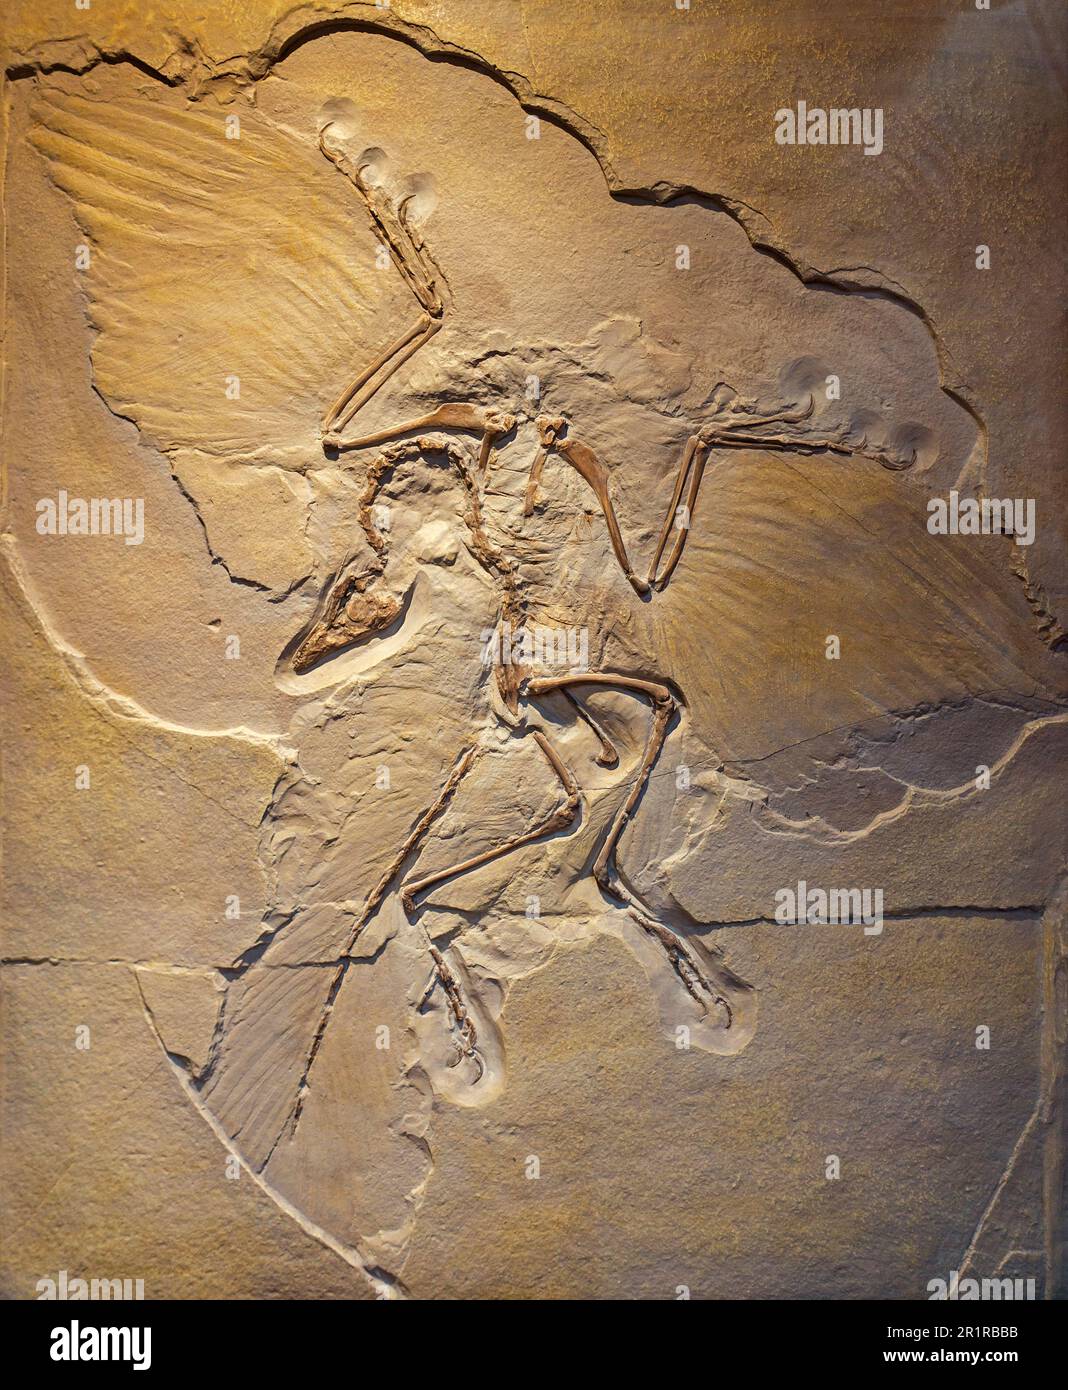 Urvogel, Berlin spécimen d'Archéopteryx (Archéopteryx siemensii), réplique du fossile transitoire de dinosaure ressemblant à un oiseau, Jurassique tardif Banque D'Images